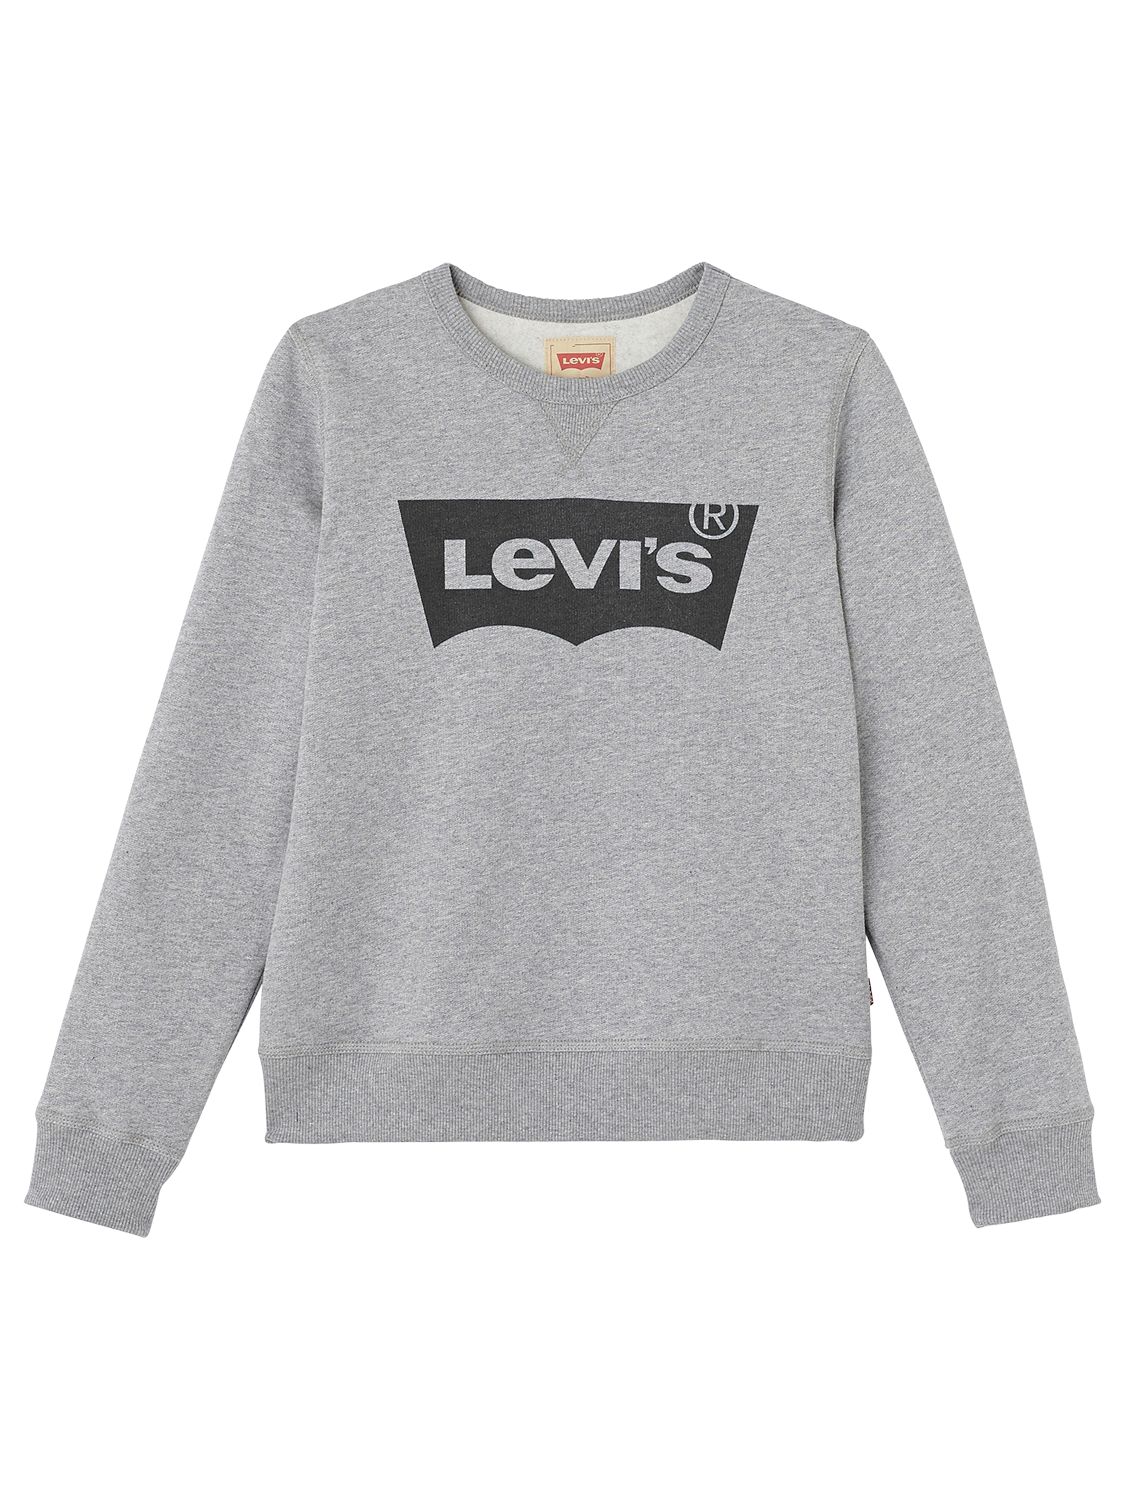 boys levis hoodie